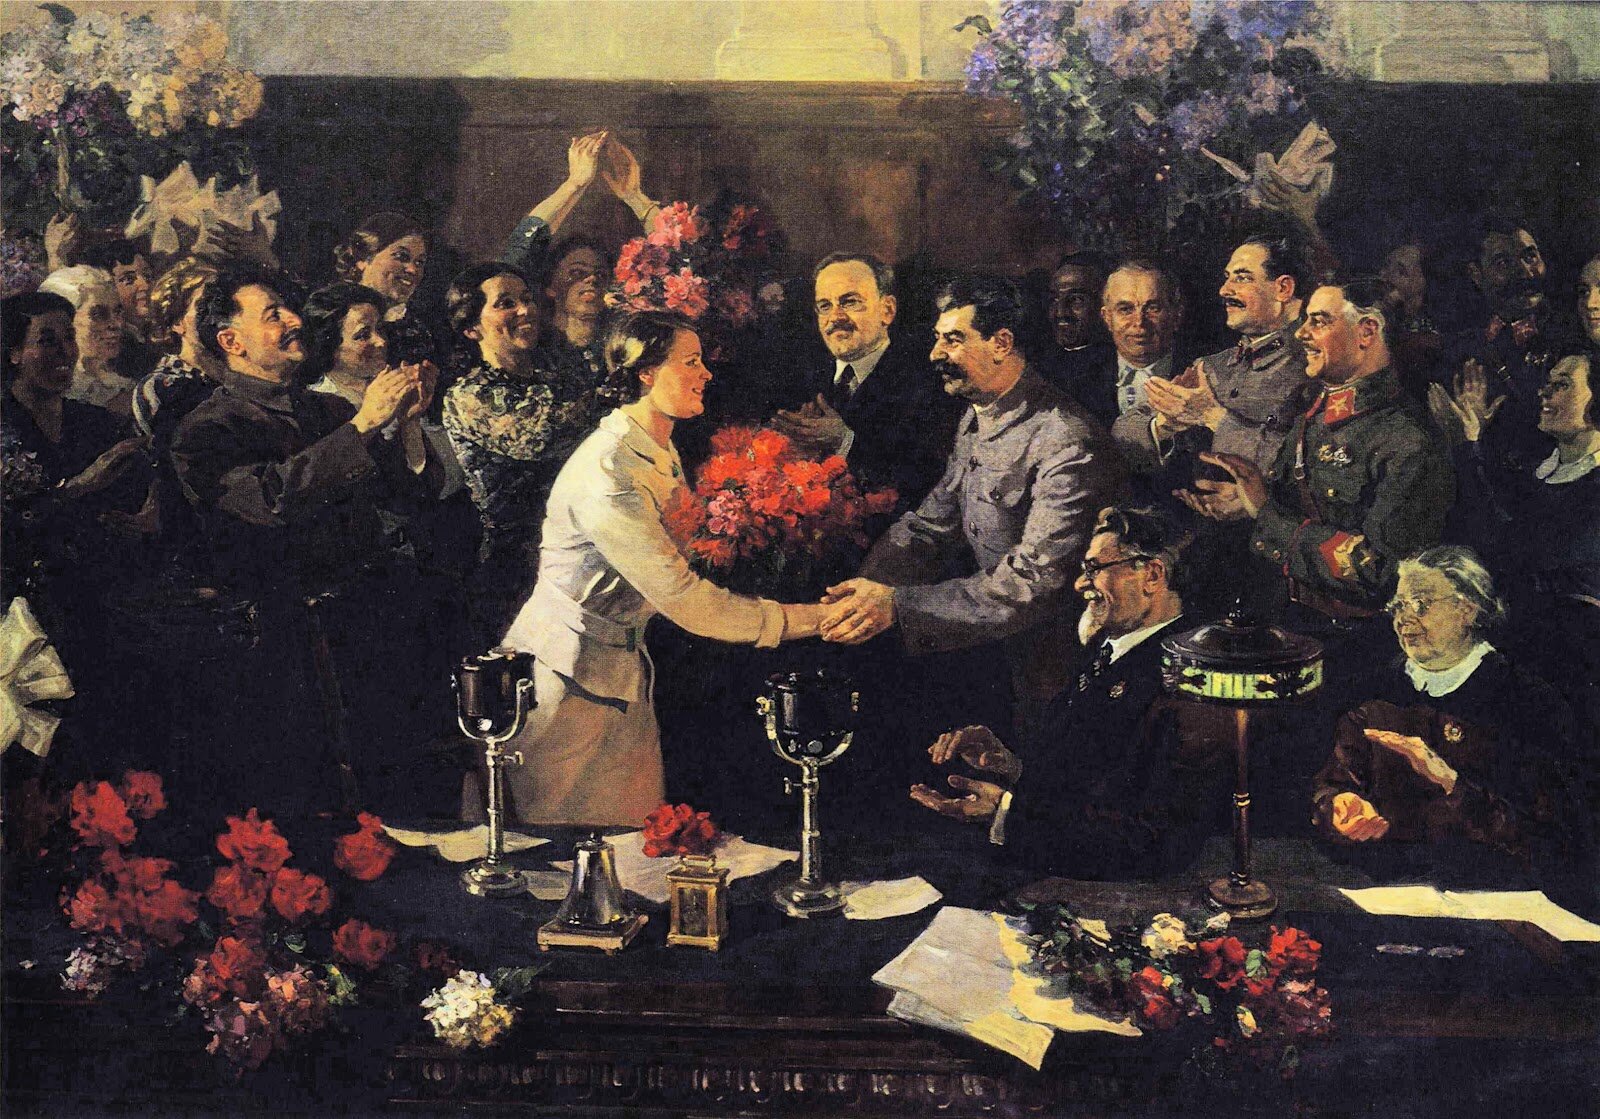 Obraz przedstawiający moment uścisku dłoni pomiędzy kobietą a Józefem Stalinem. W tle mnóstwo osób przyglądających się wydarzeniu.